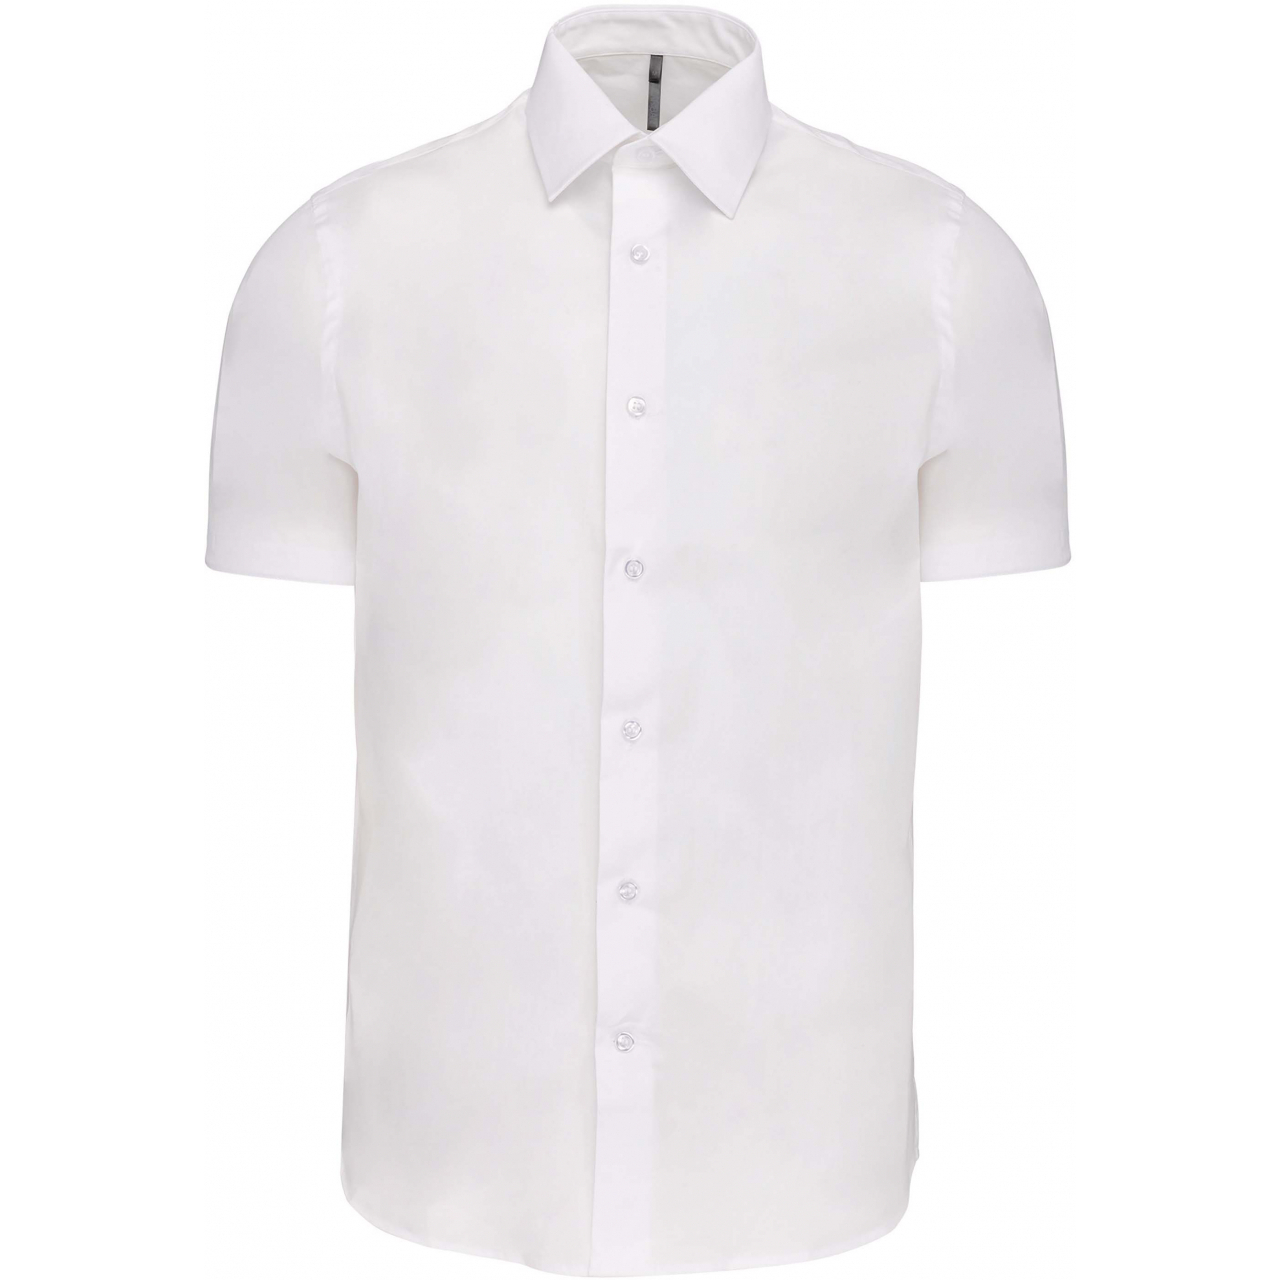 Pánská košile s krátkým rukávem Kariban strečová - bílá, L